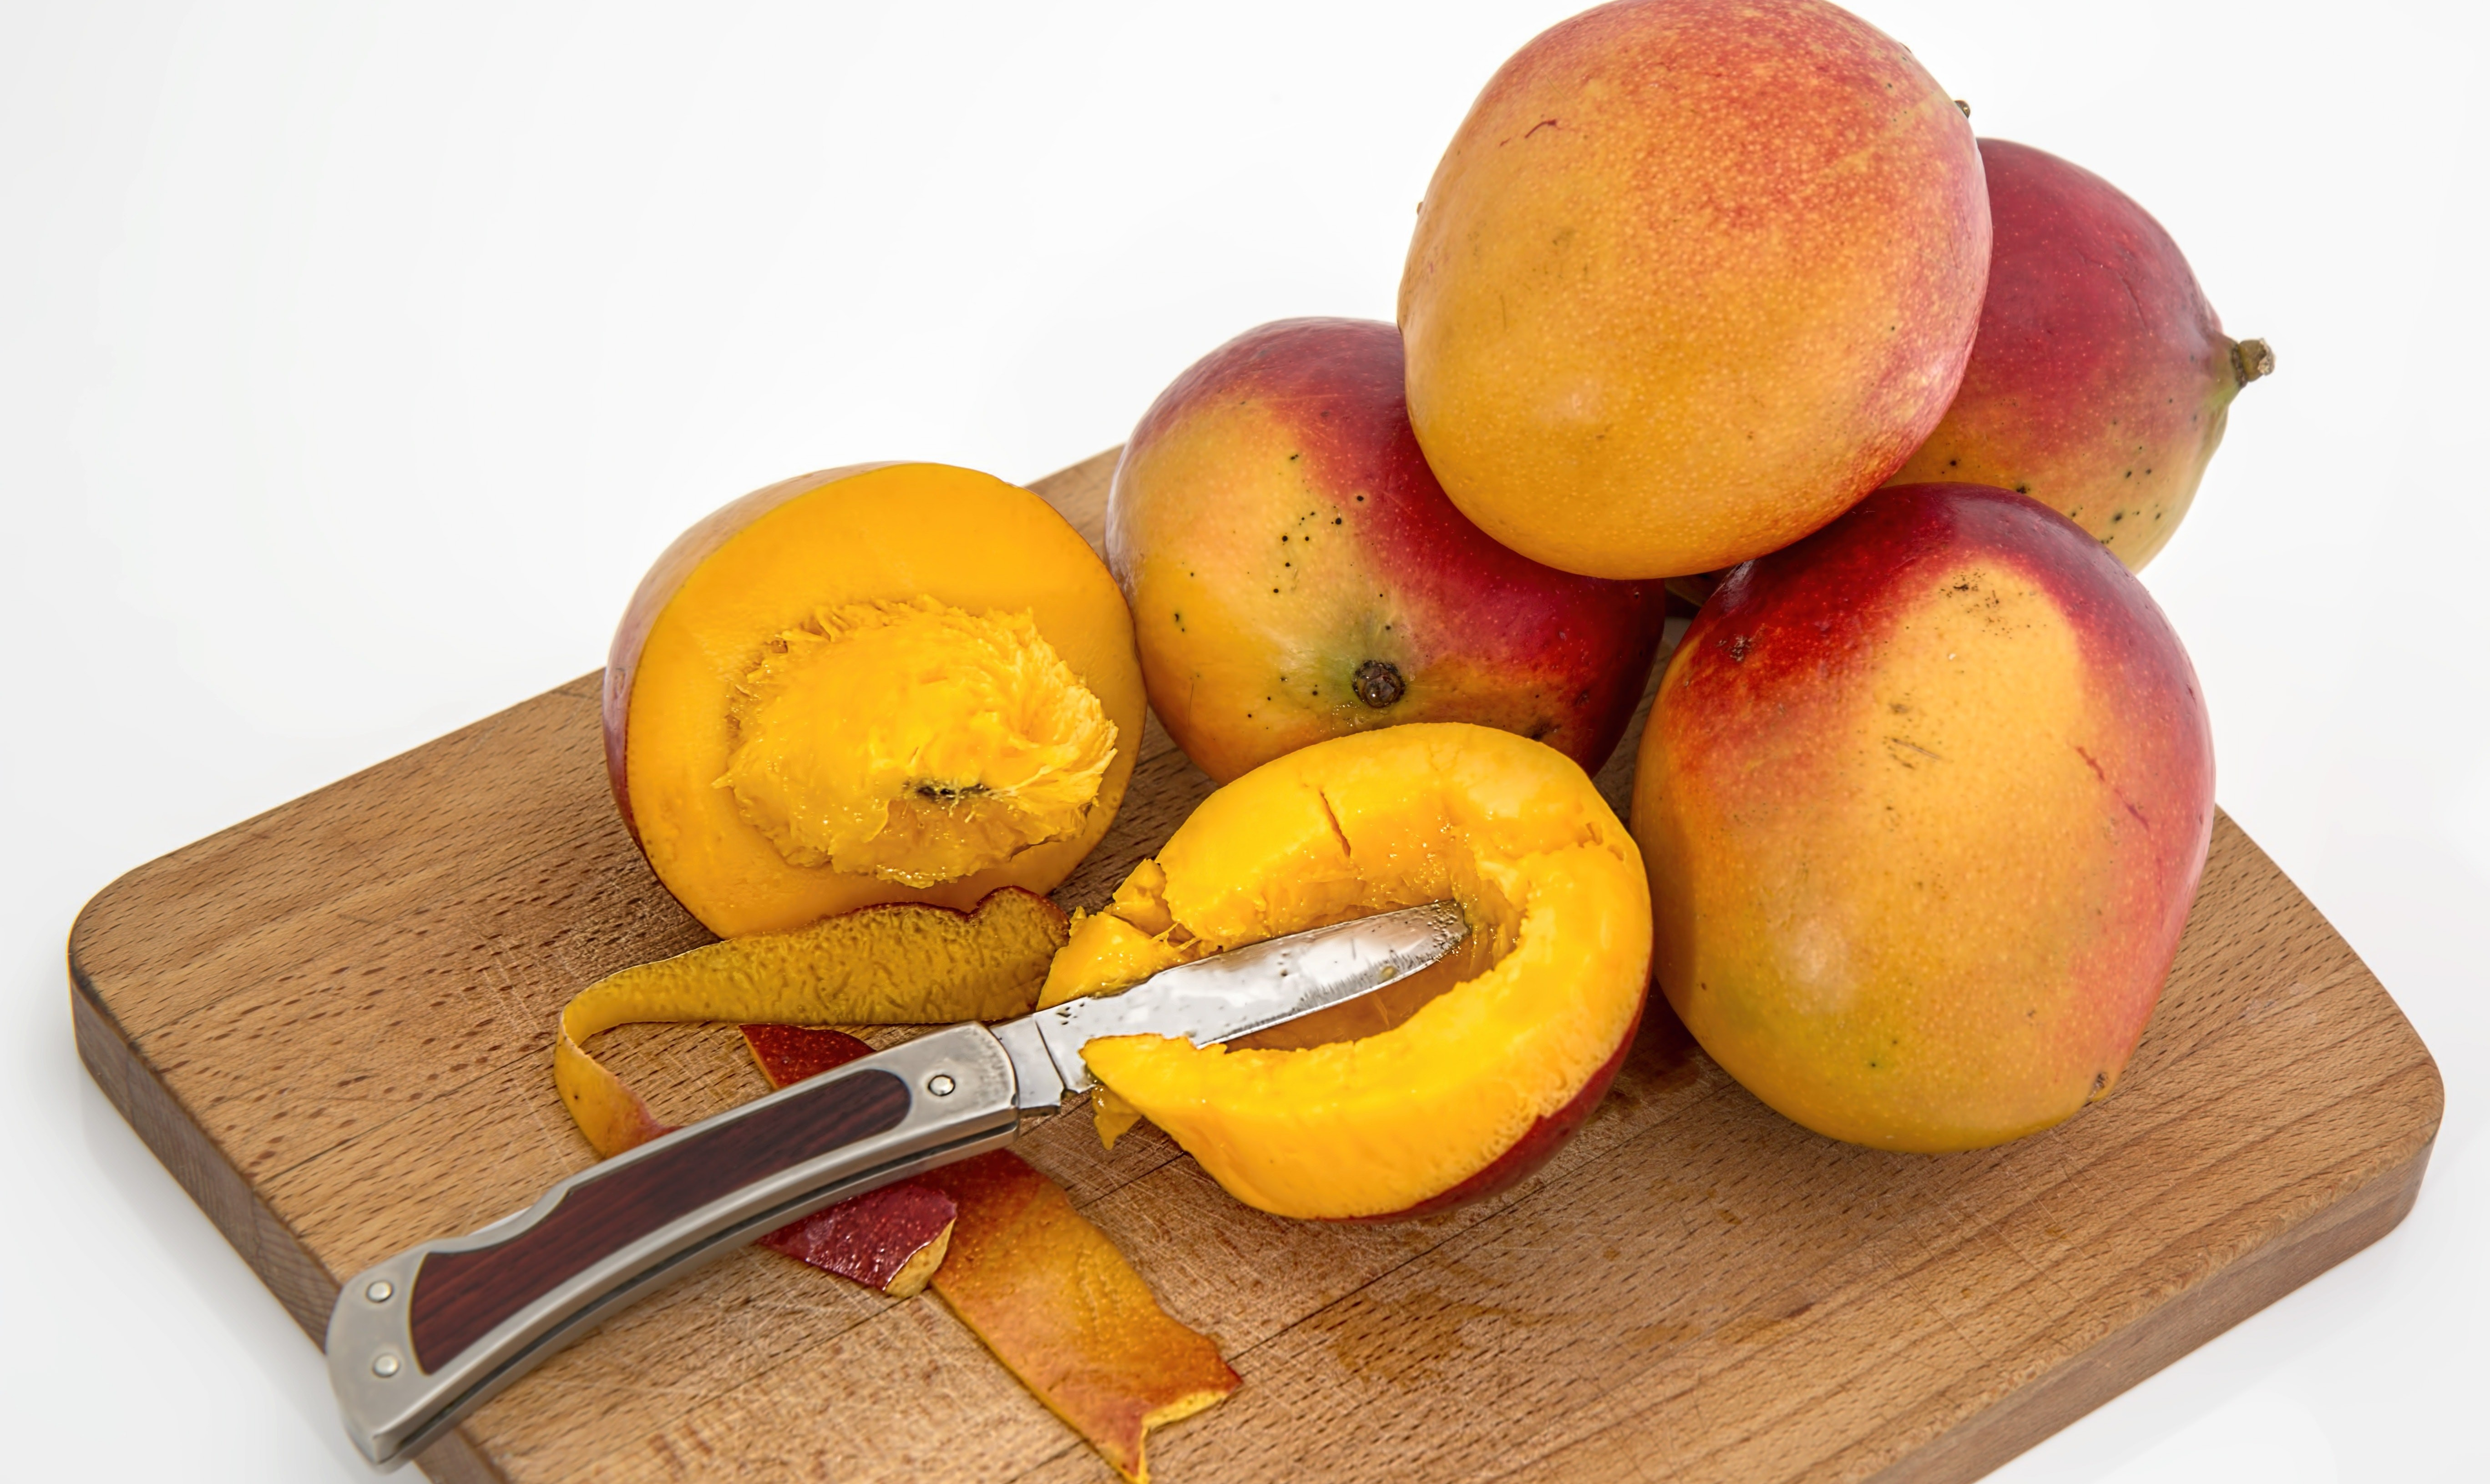 Как правильно резать и чистить манго с косточкой: 5 простых способов, а также секреты очистки в домашних условиях